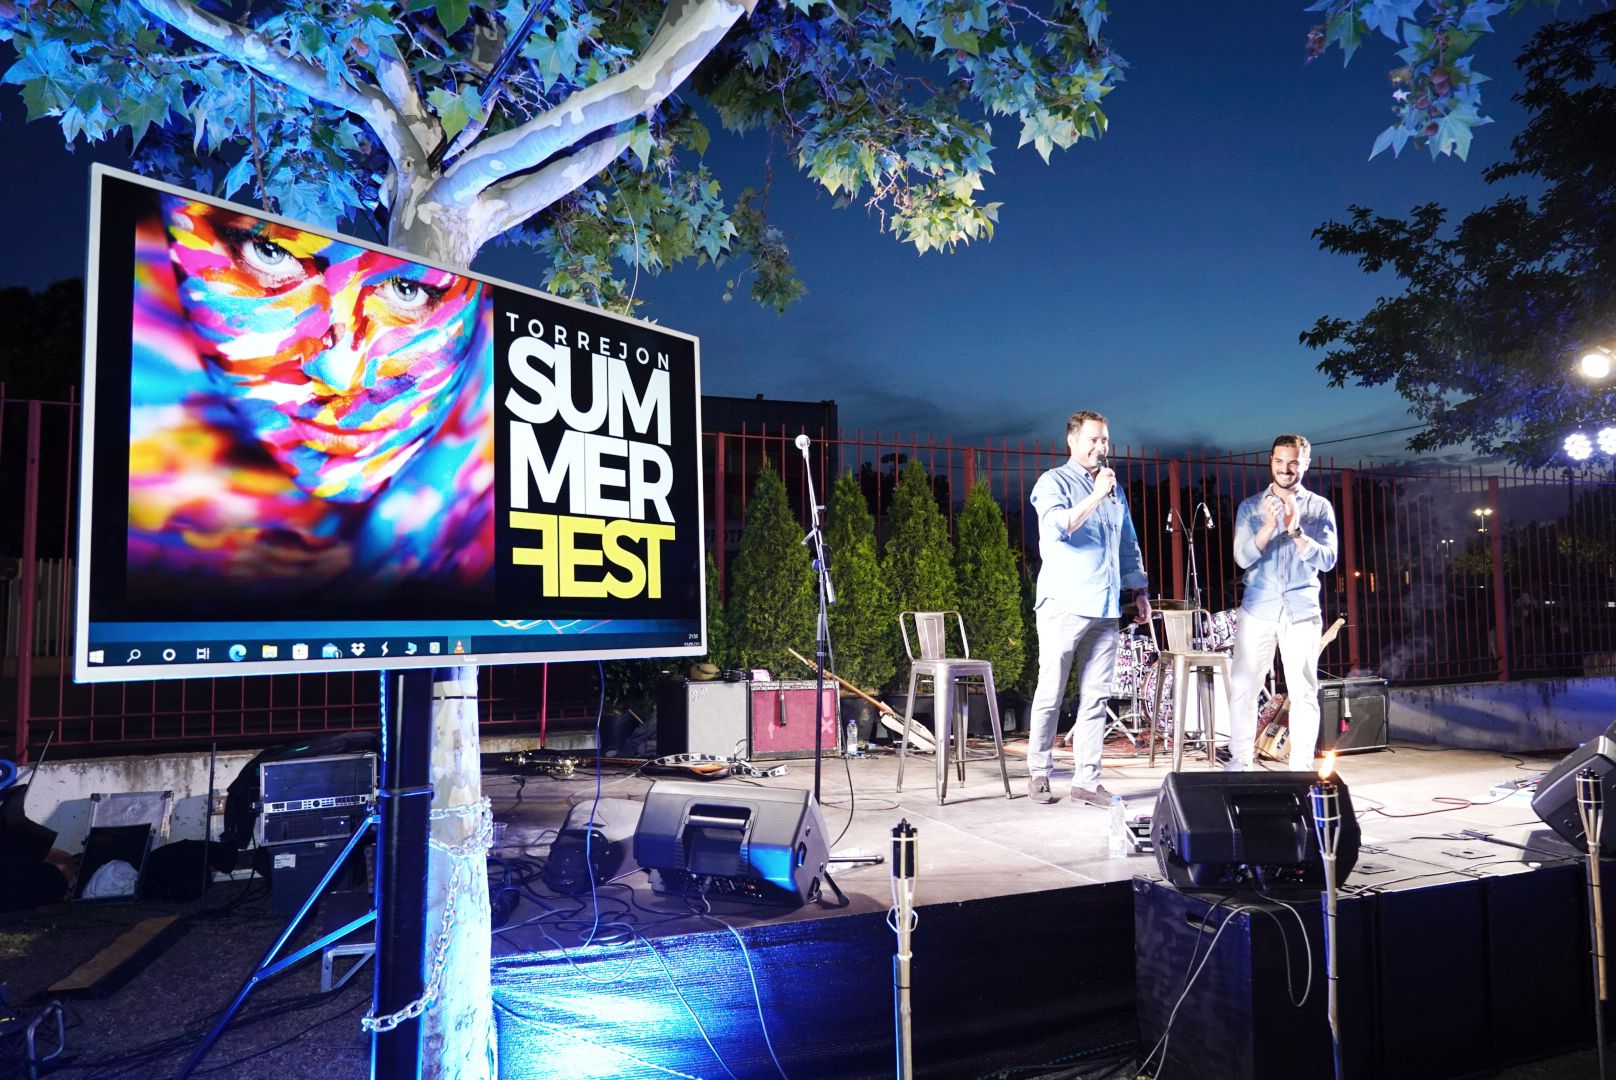 Presentado el nuevo festival “Torrejón Summer Fest”, con grandes conciertos, eventos lúdicos y culturales, todos ellos gratuitos para los vecinos de la ciudad